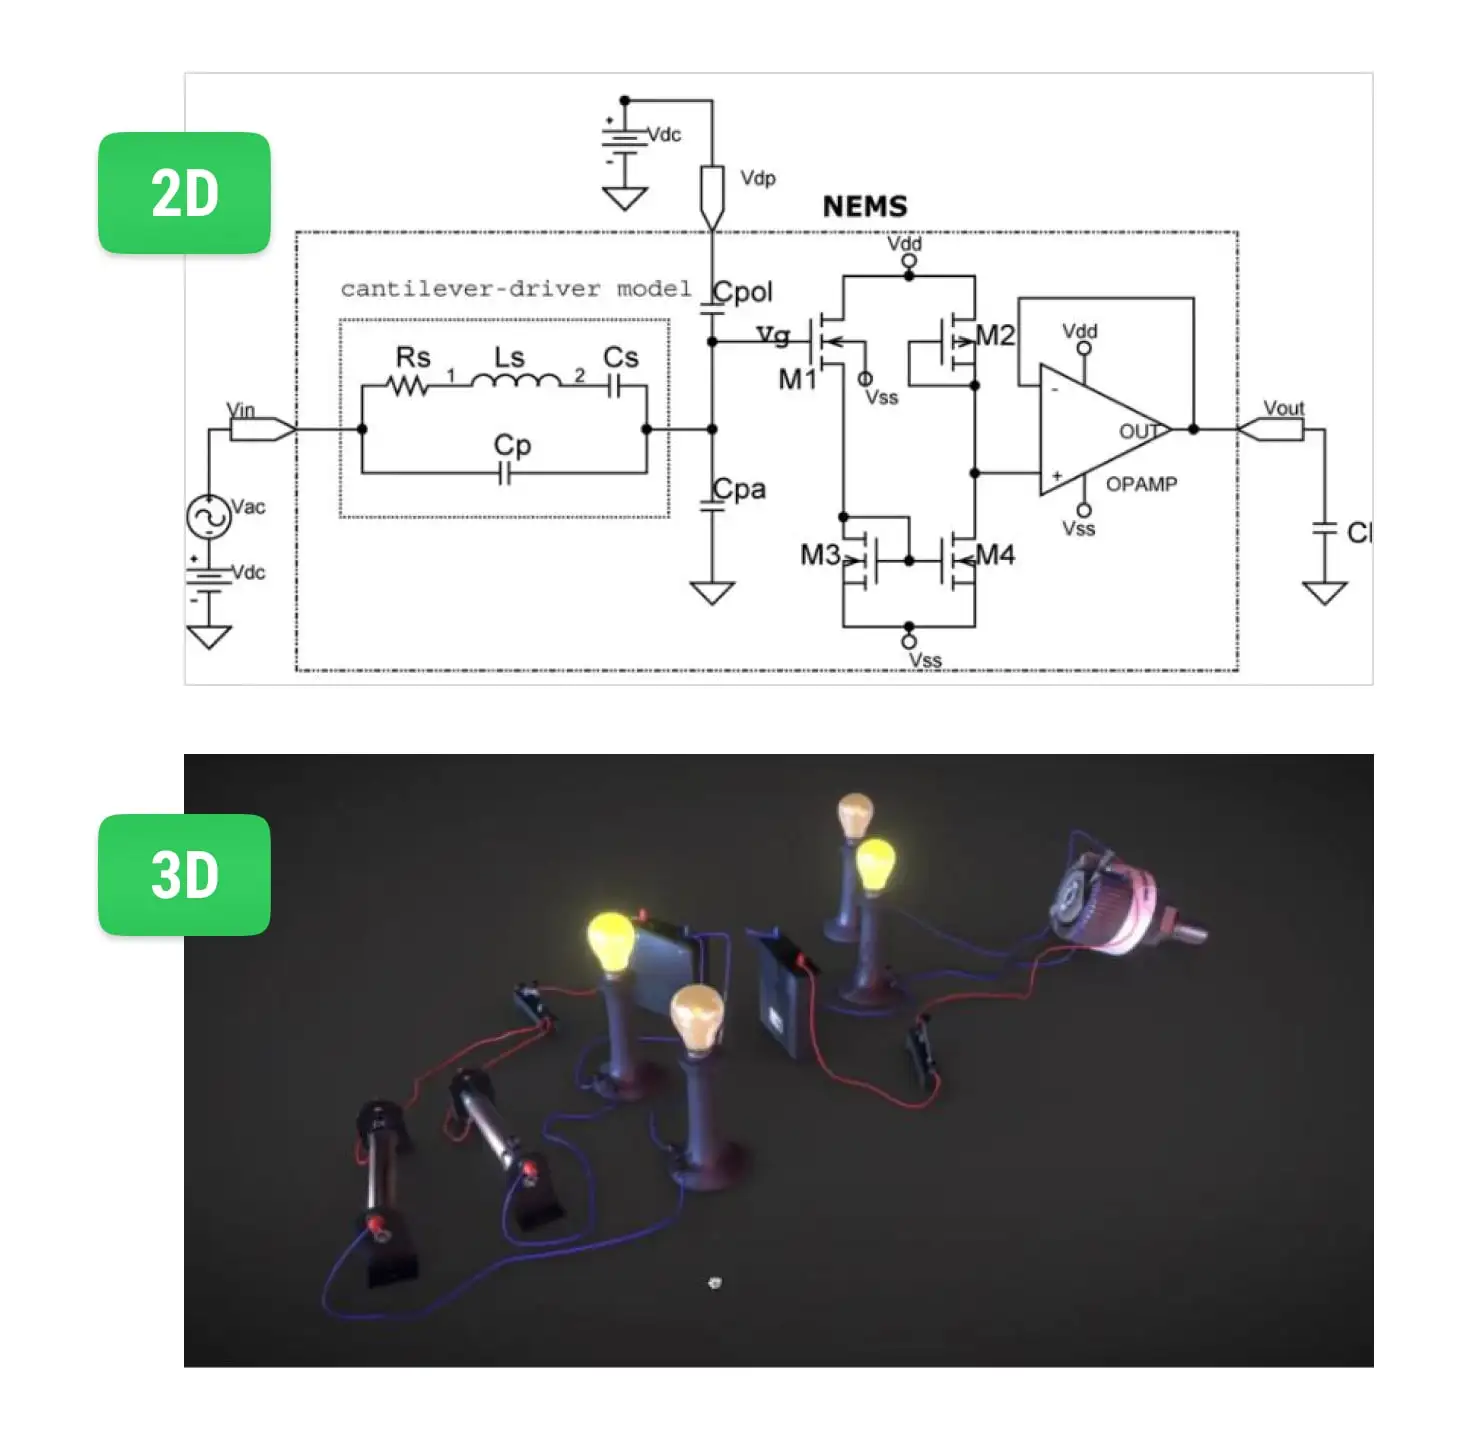 A virtual representation of an electrical scheme